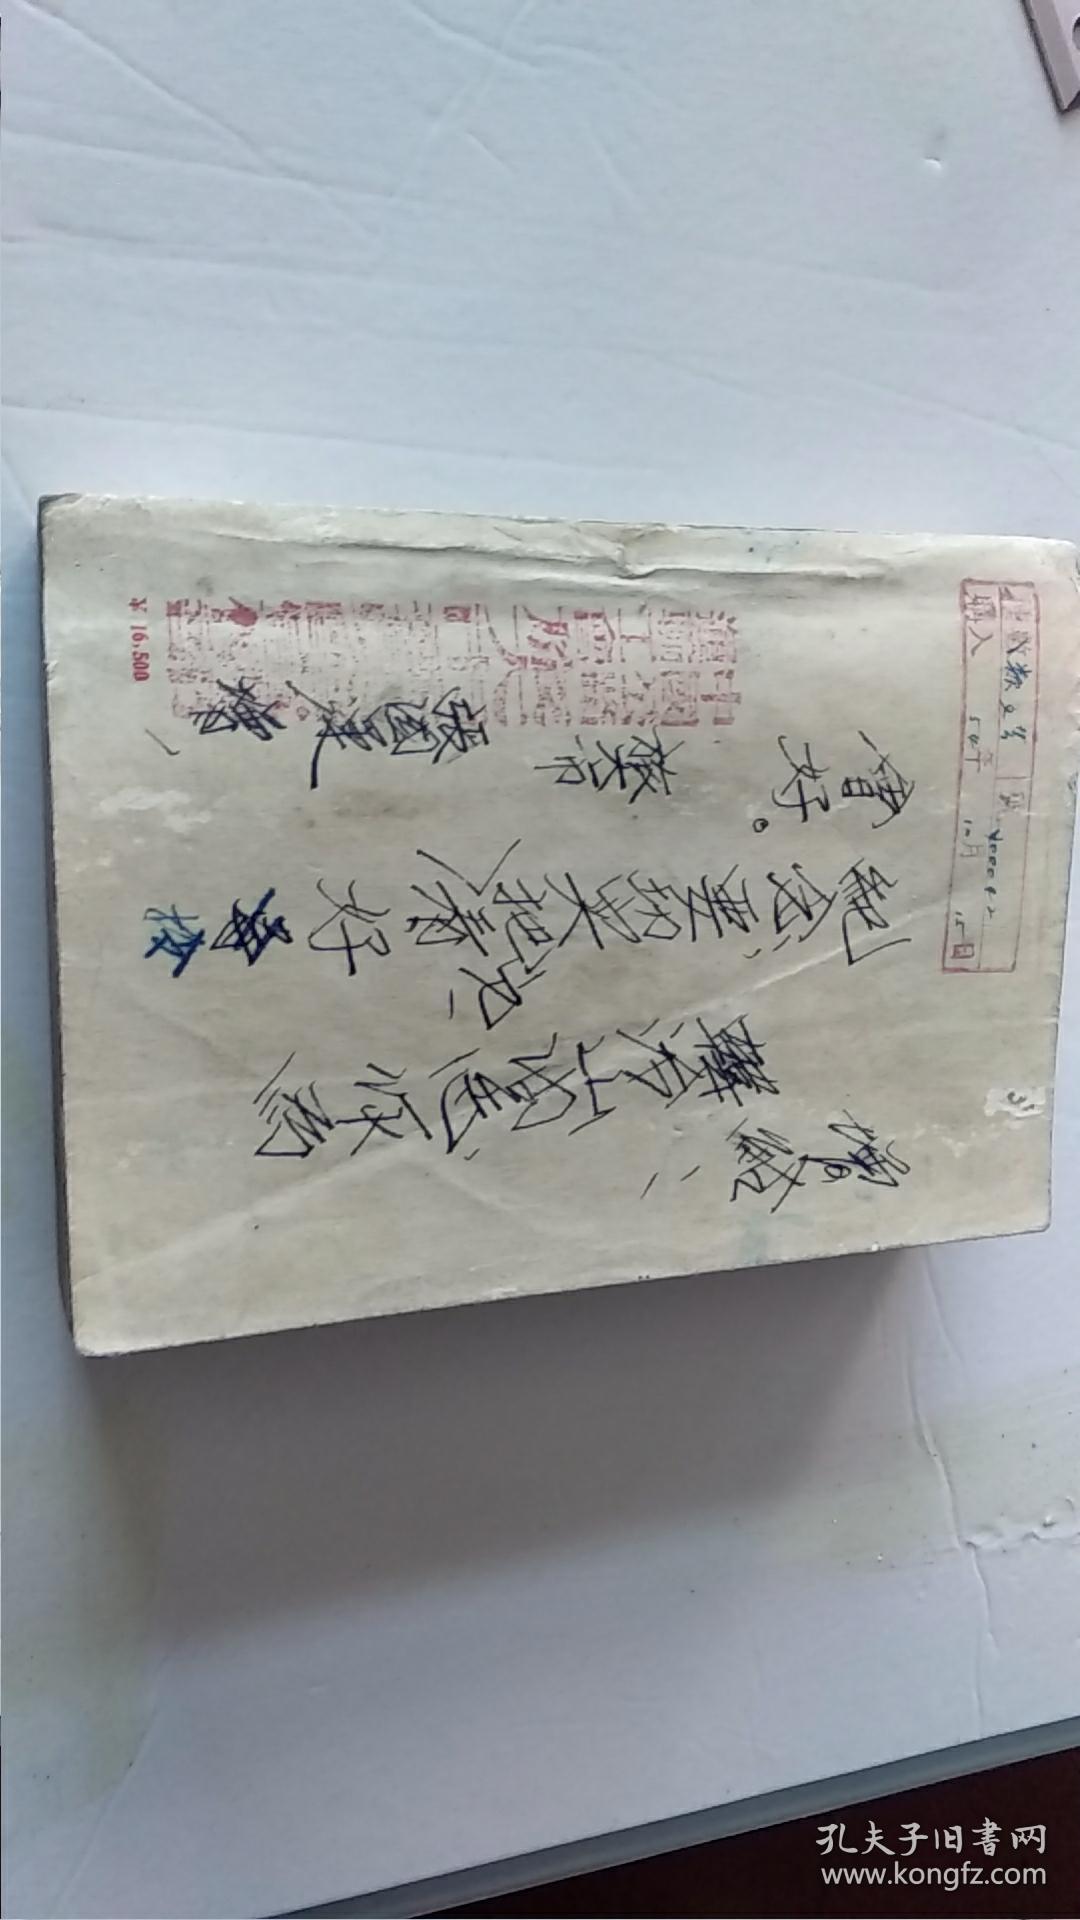 保衞延安,解放军文艺丛书1954年6月北京第1版1954年6月北京第1次印刷,竖揩版繁体字,